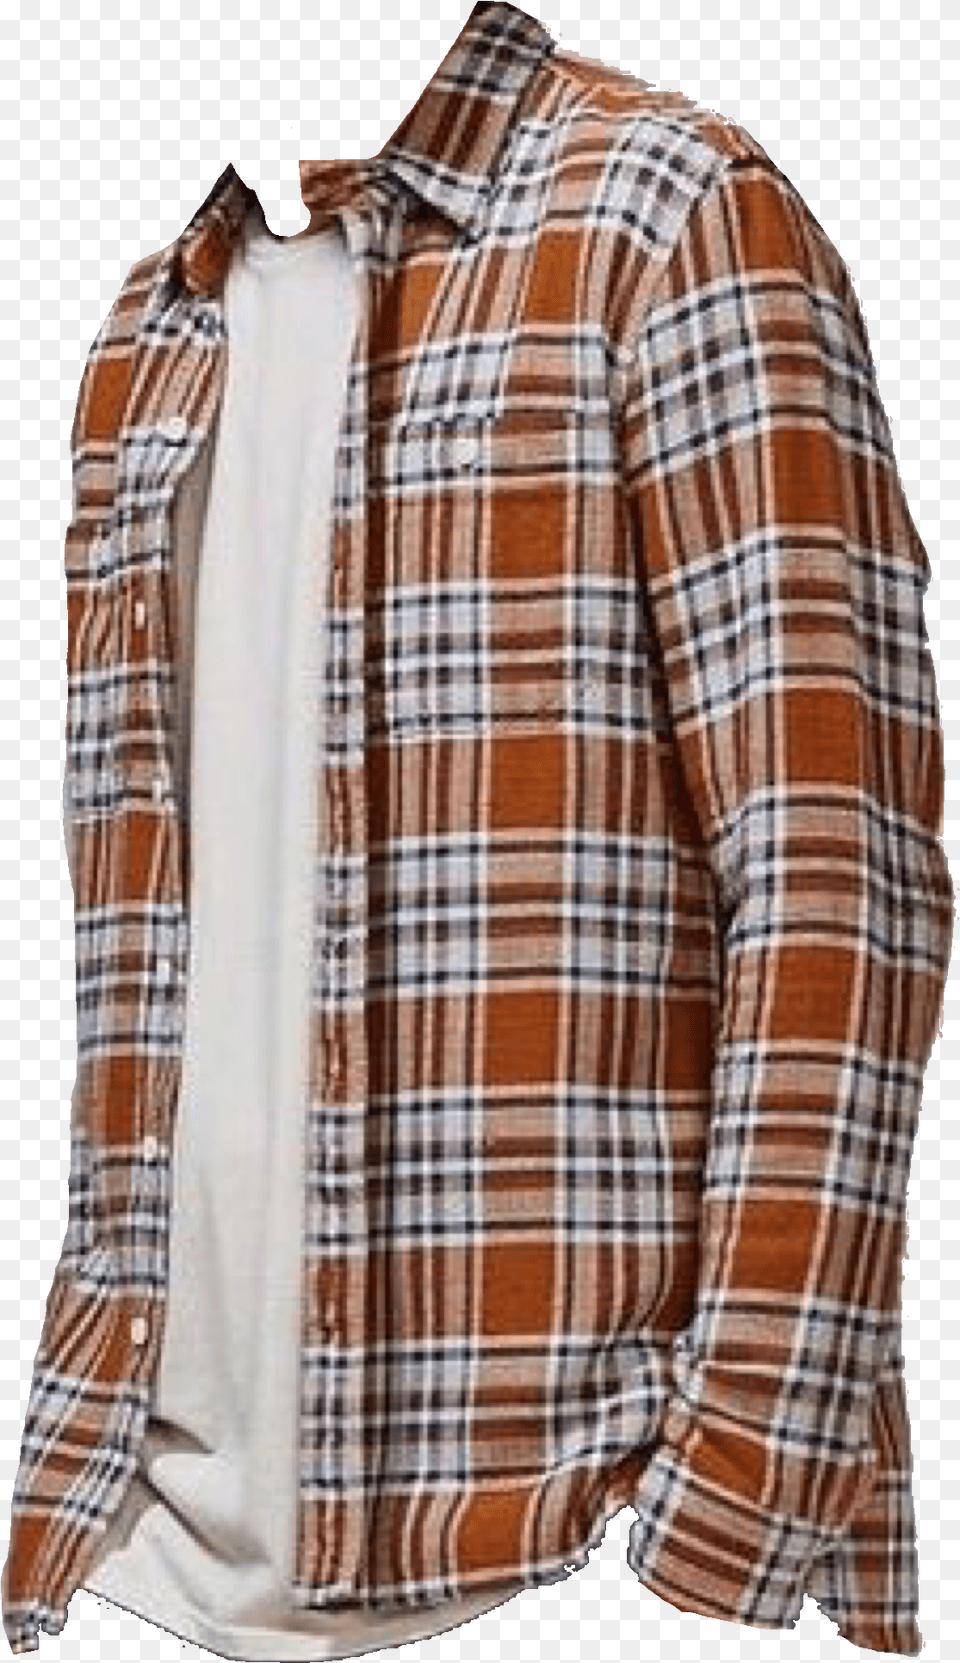 Grunges, Clothing, Shirt, Coat, Jacket Png Image